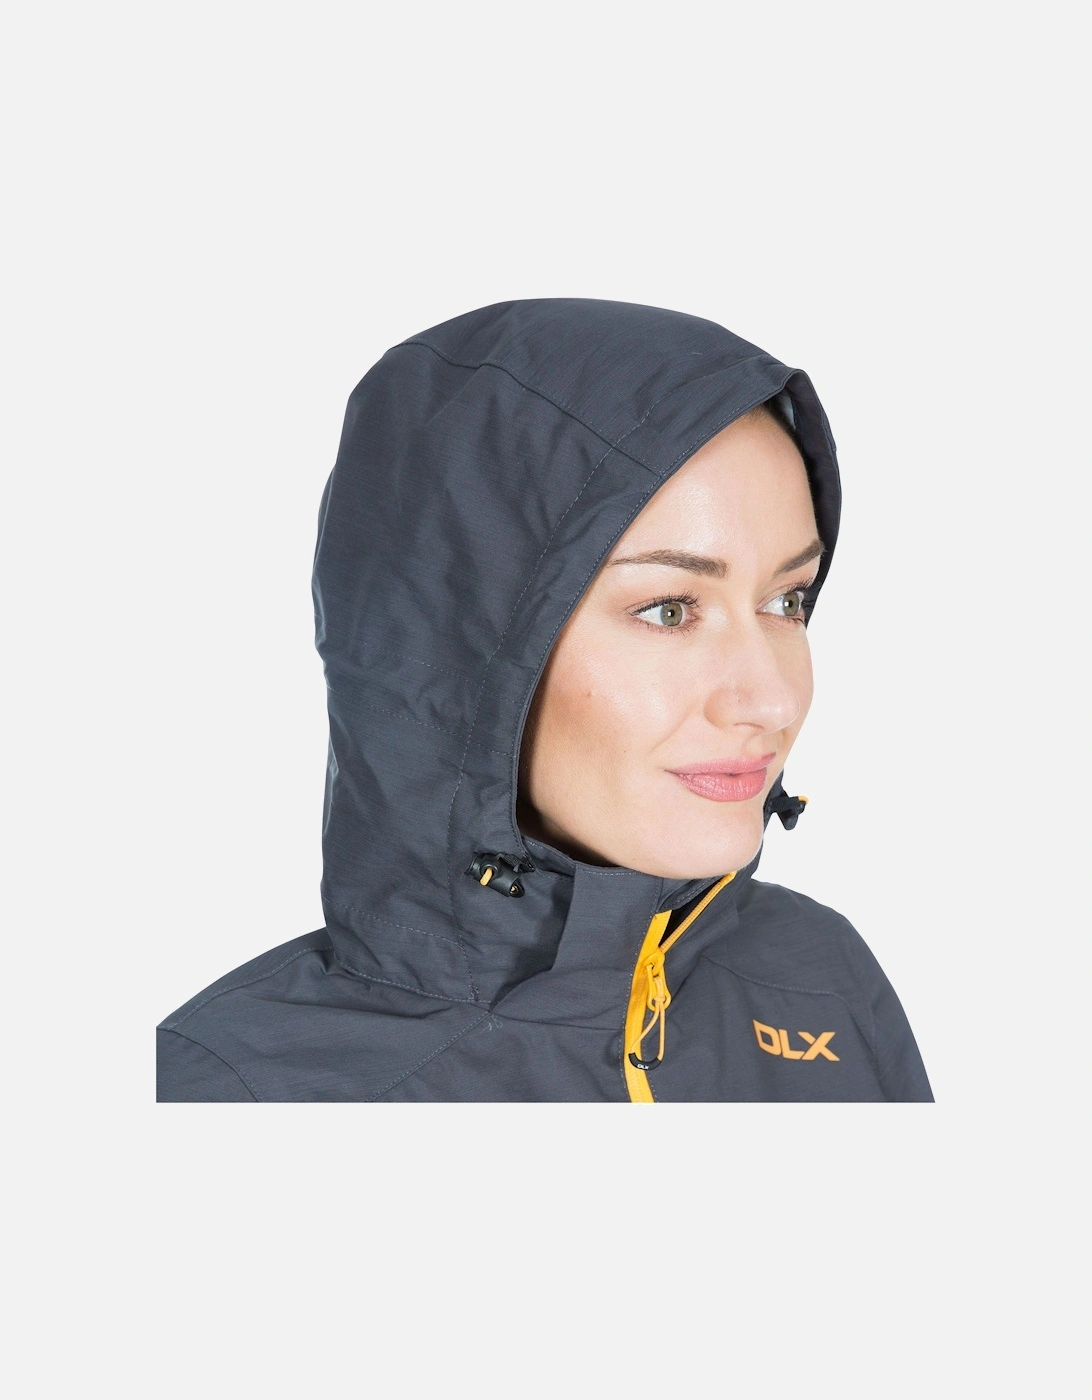 Womens/Ladies Gayle Waterproof Jacket